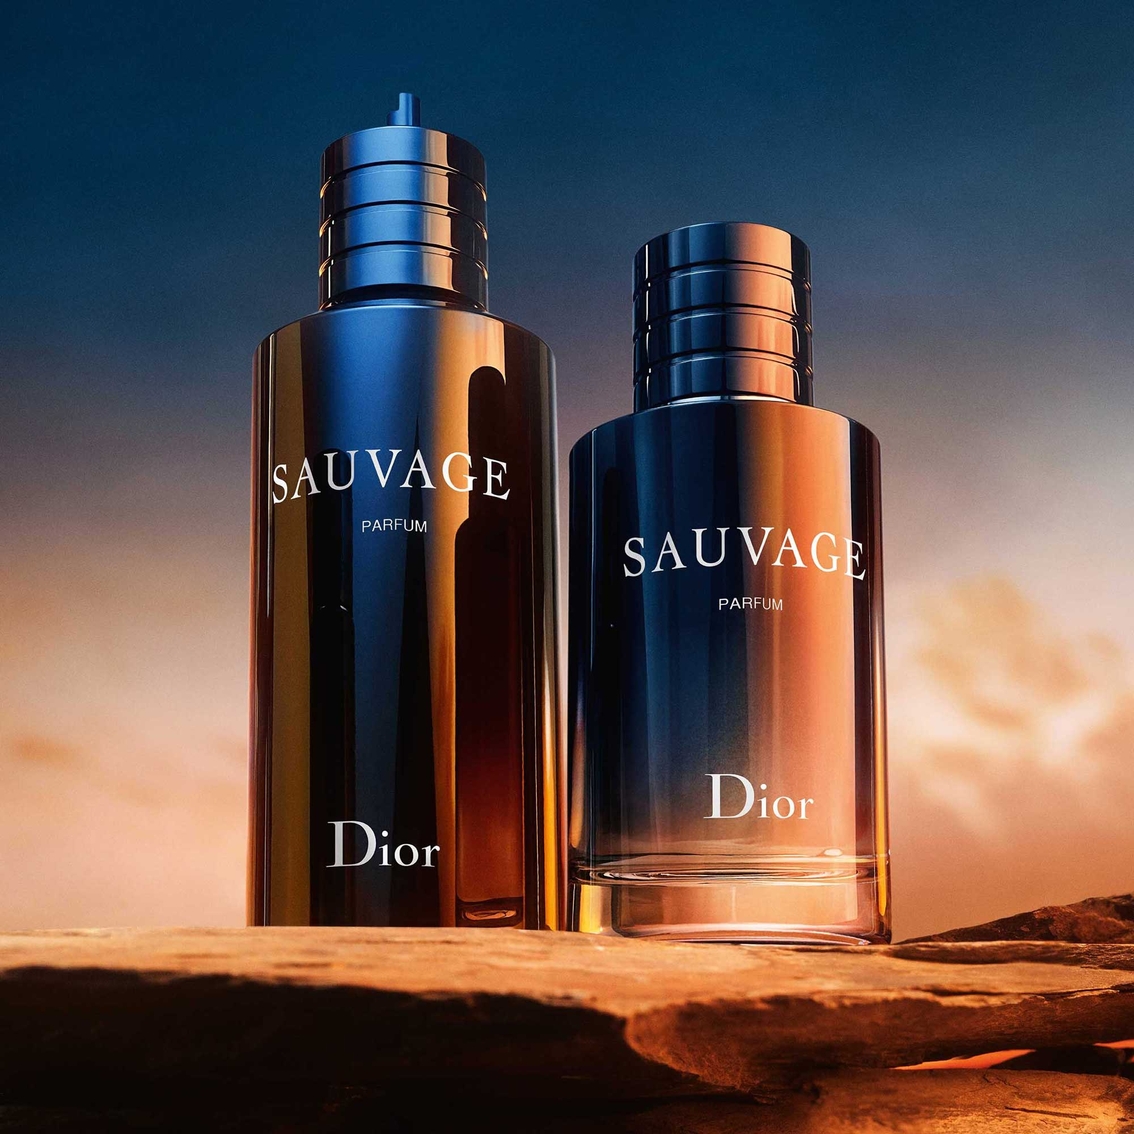 Dior Sauvage Parfum - Image 2 of 4